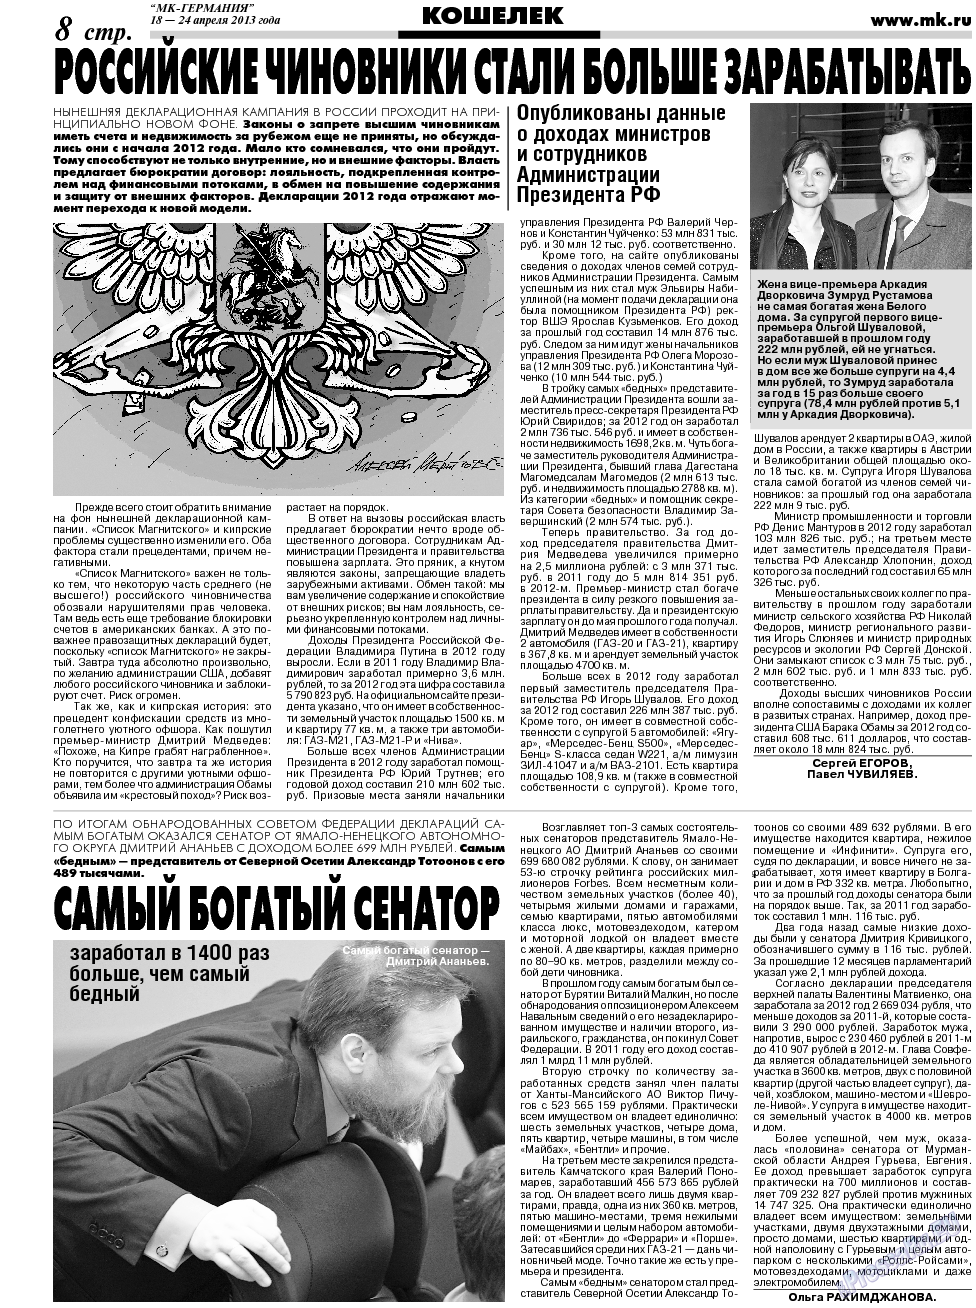 МК-Германия (газета). 2013 год, номер 16, стр. 8